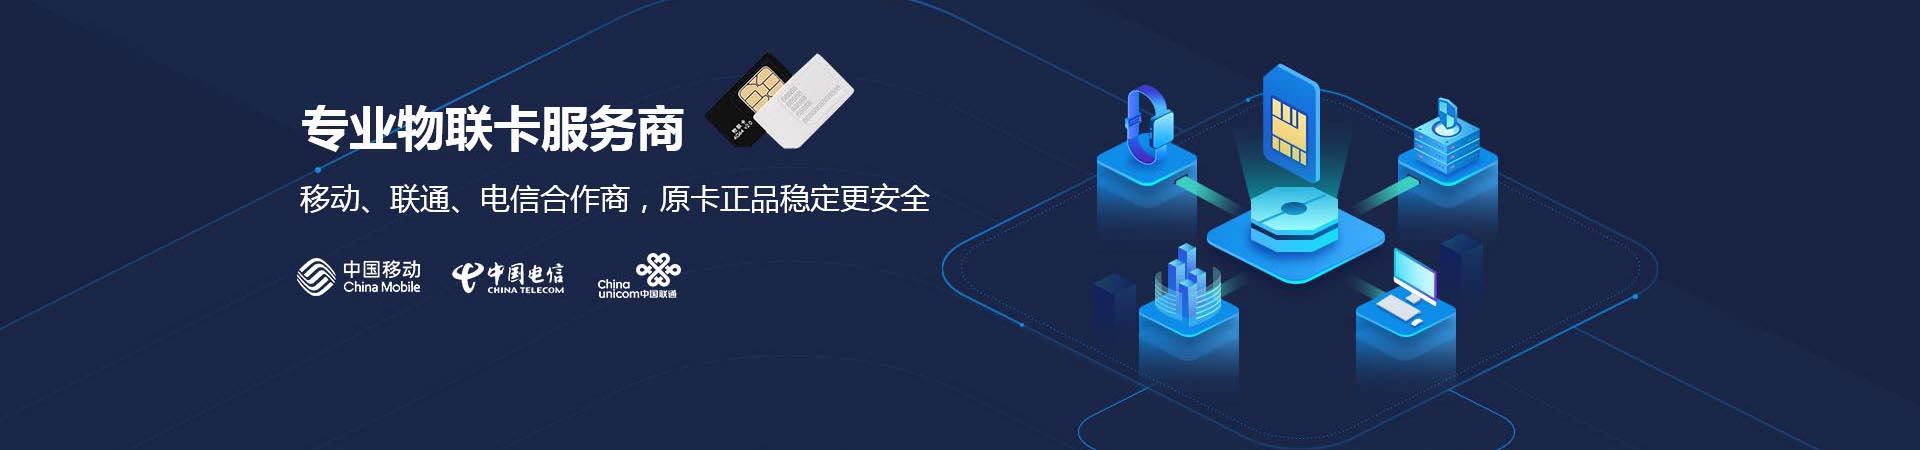 物聯卡是中國移動基于公眾物聯網，面向物聯網用戶提供的移動通信接入業務